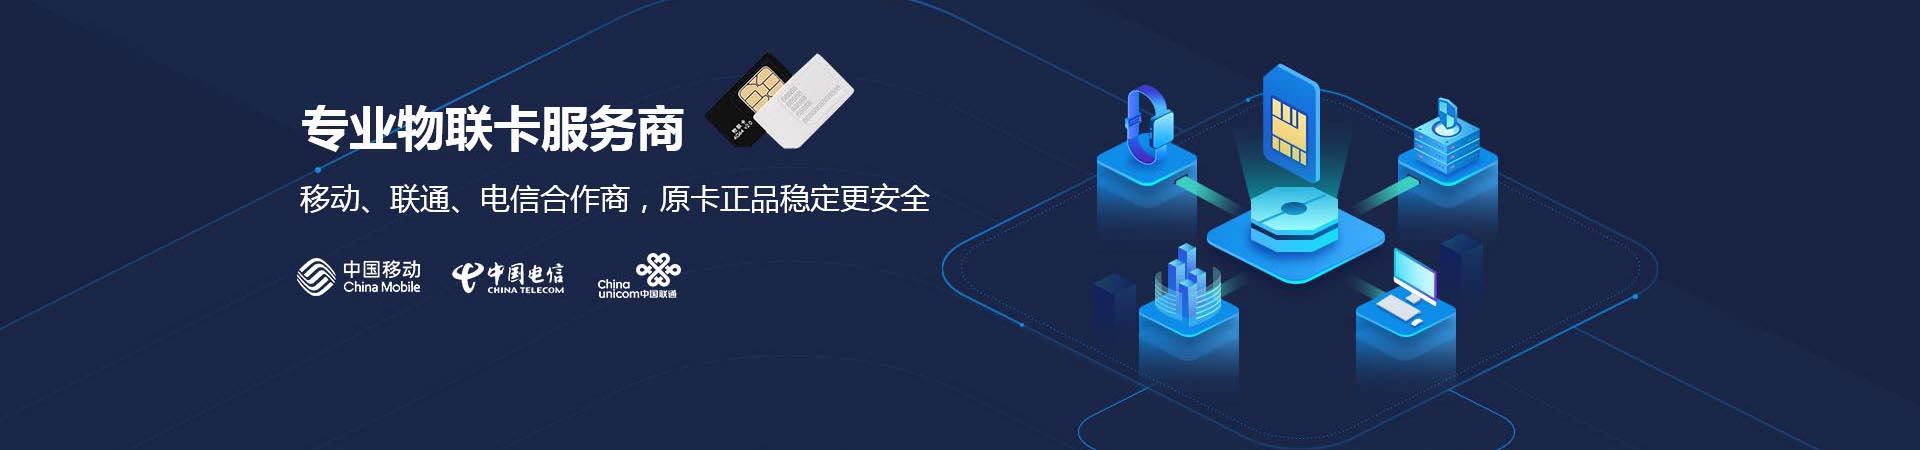 物聯卡是中國移動基于公眾物聯網，面向物聯網用戶提供的移動通信接入業務